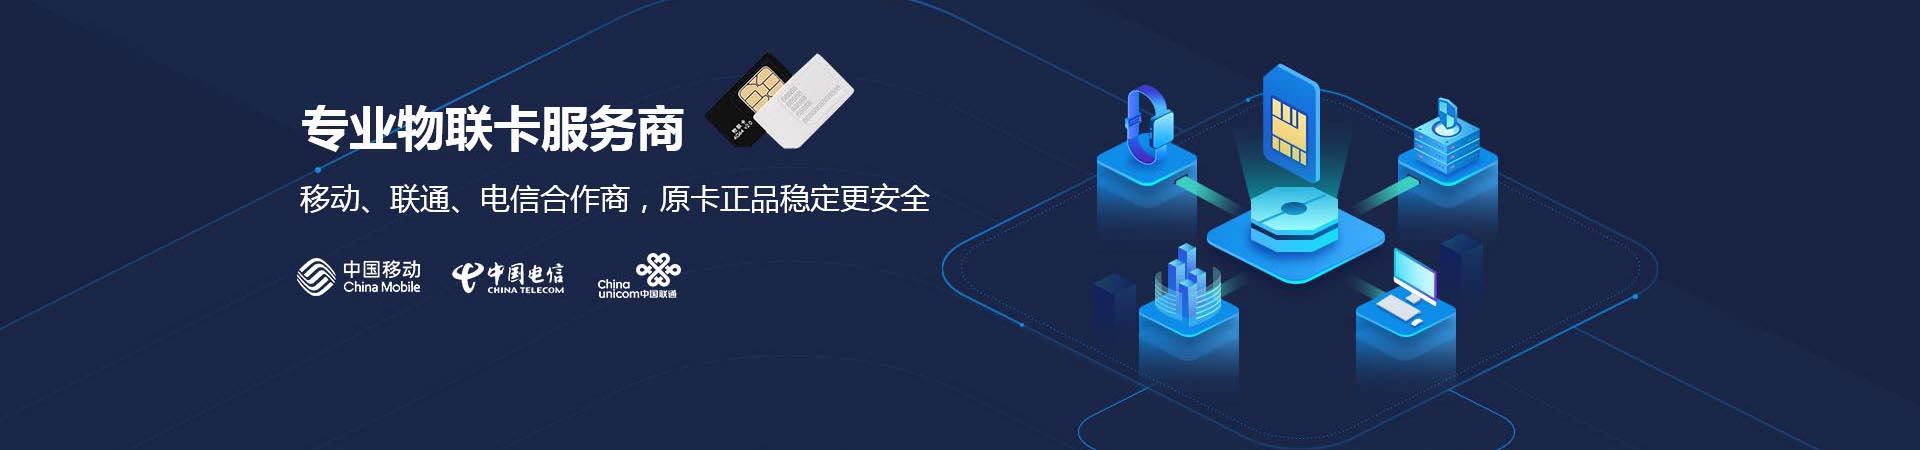 物聯卡是中國移動基于公眾物聯網，面向物聯網用戶提供的移動通信接入業務